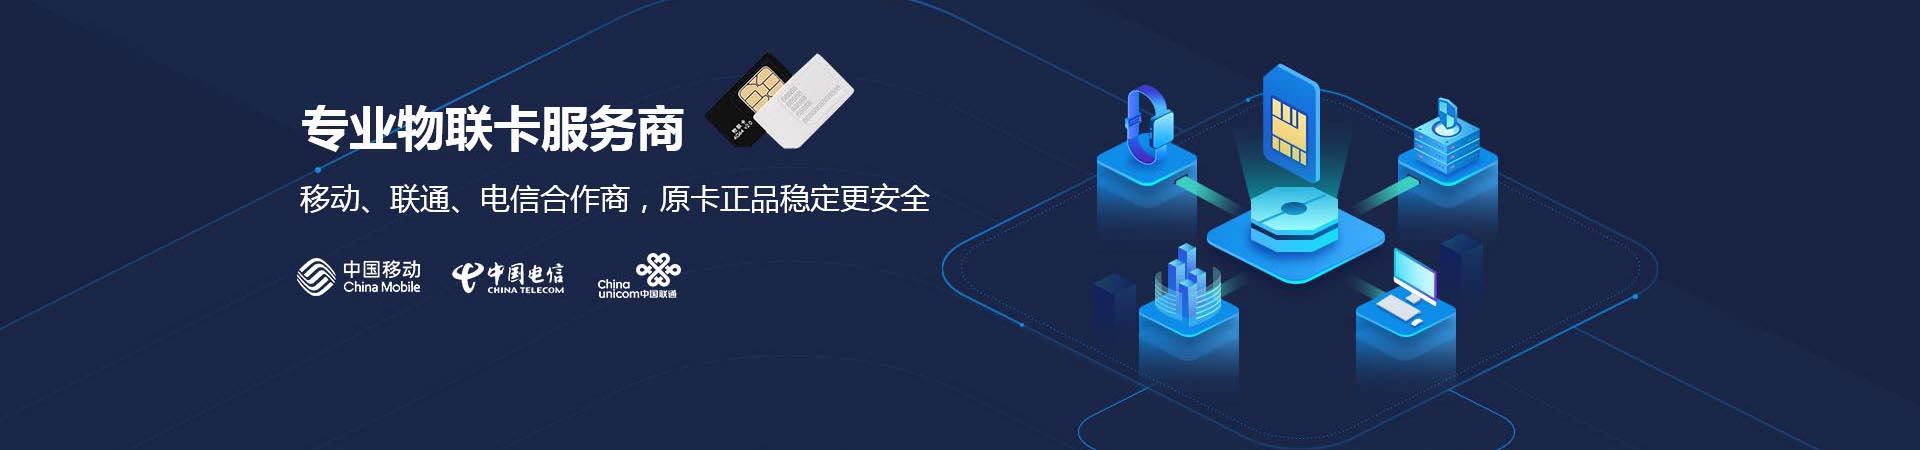 物聯卡是中國移動基于公眾物聯網，面向物聯網用戶提供的移動通信接入業務